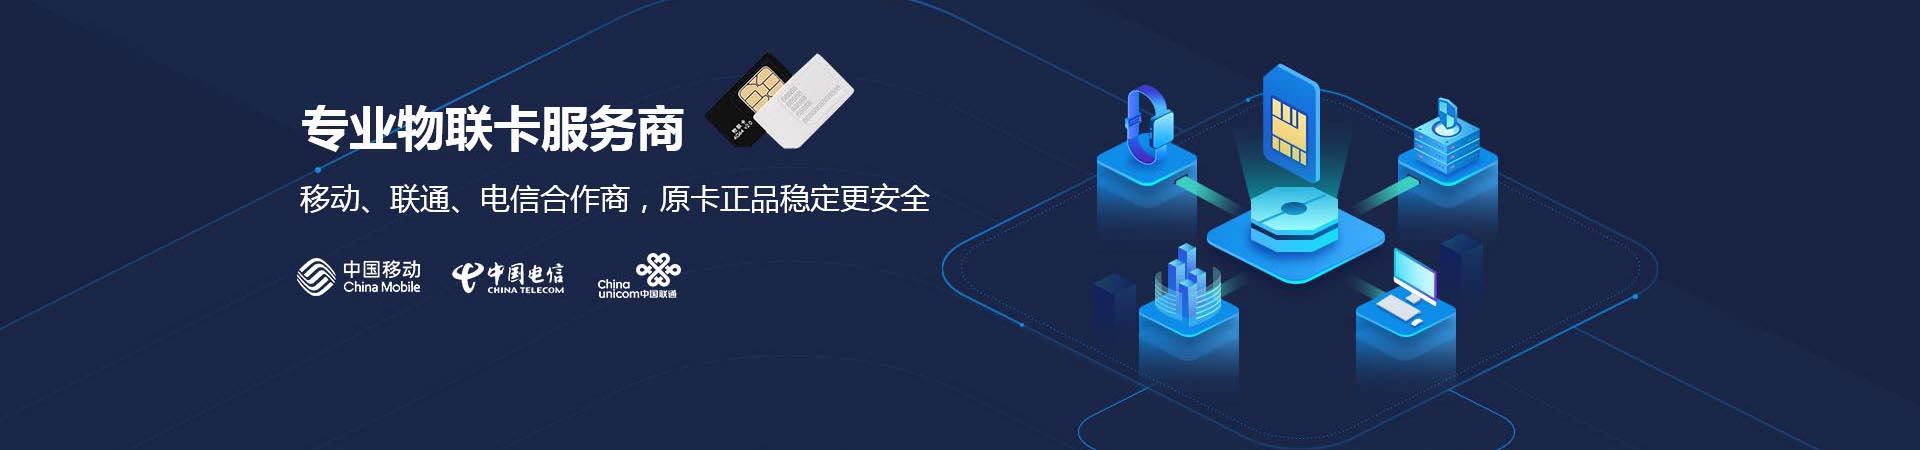 物聯卡是中國移動基于公眾物聯網，面向物聯網用戶提供的移動通信接入業務